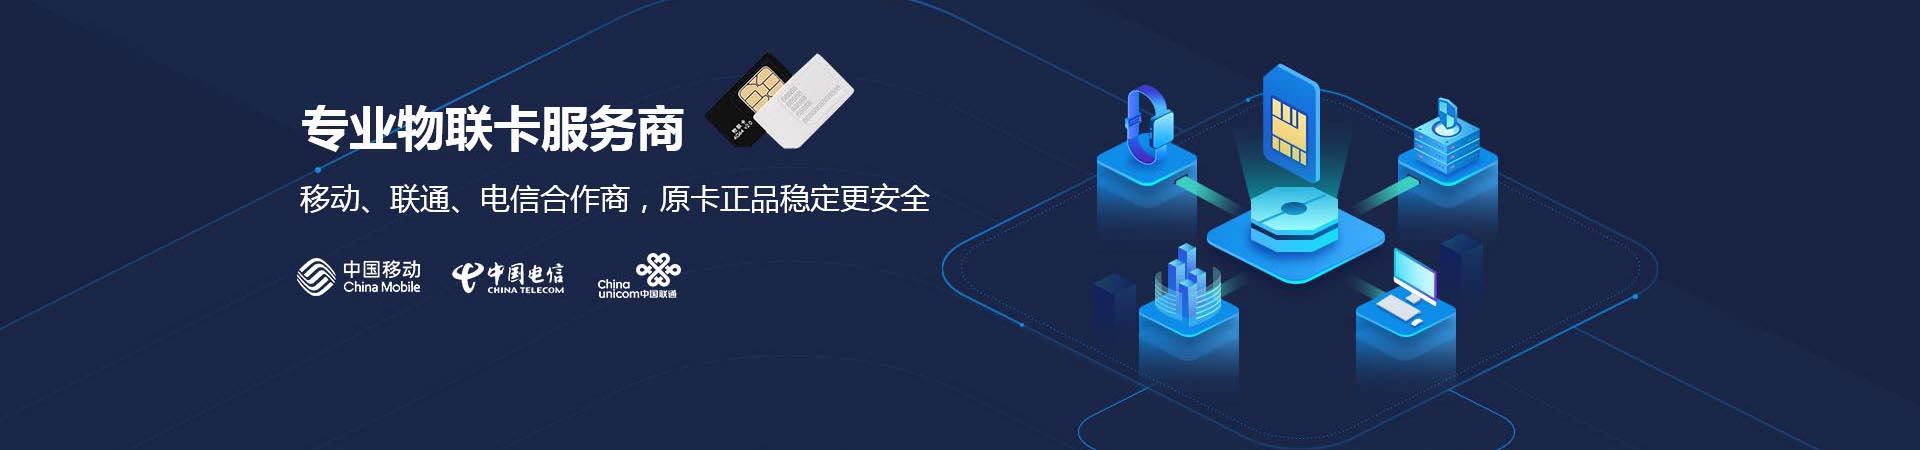 物聯卡是中國移動基于公眾物聯網，面向物聯網用戶提供的移動通信接入業務